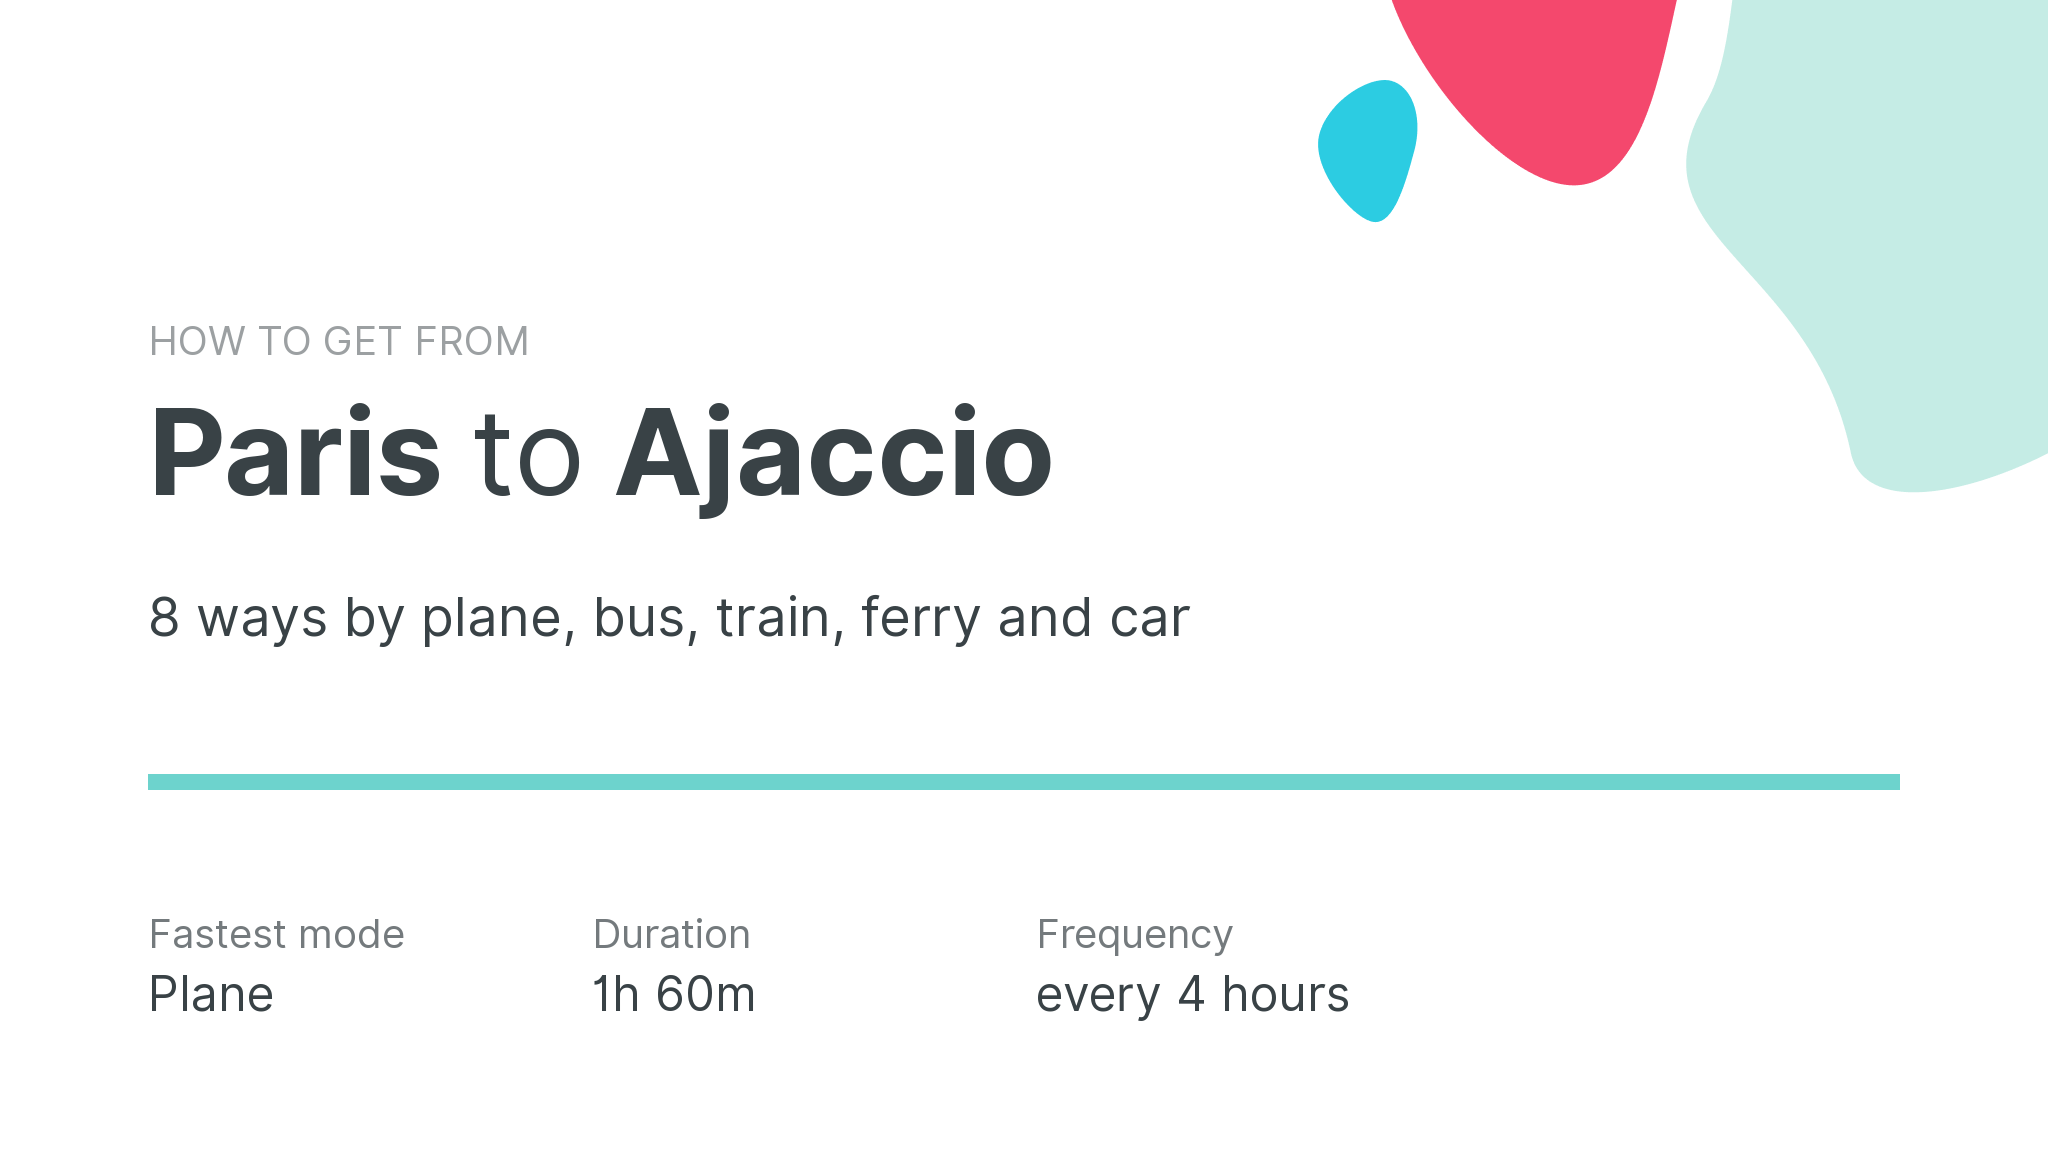 How do I get from Paris to Ajaccio